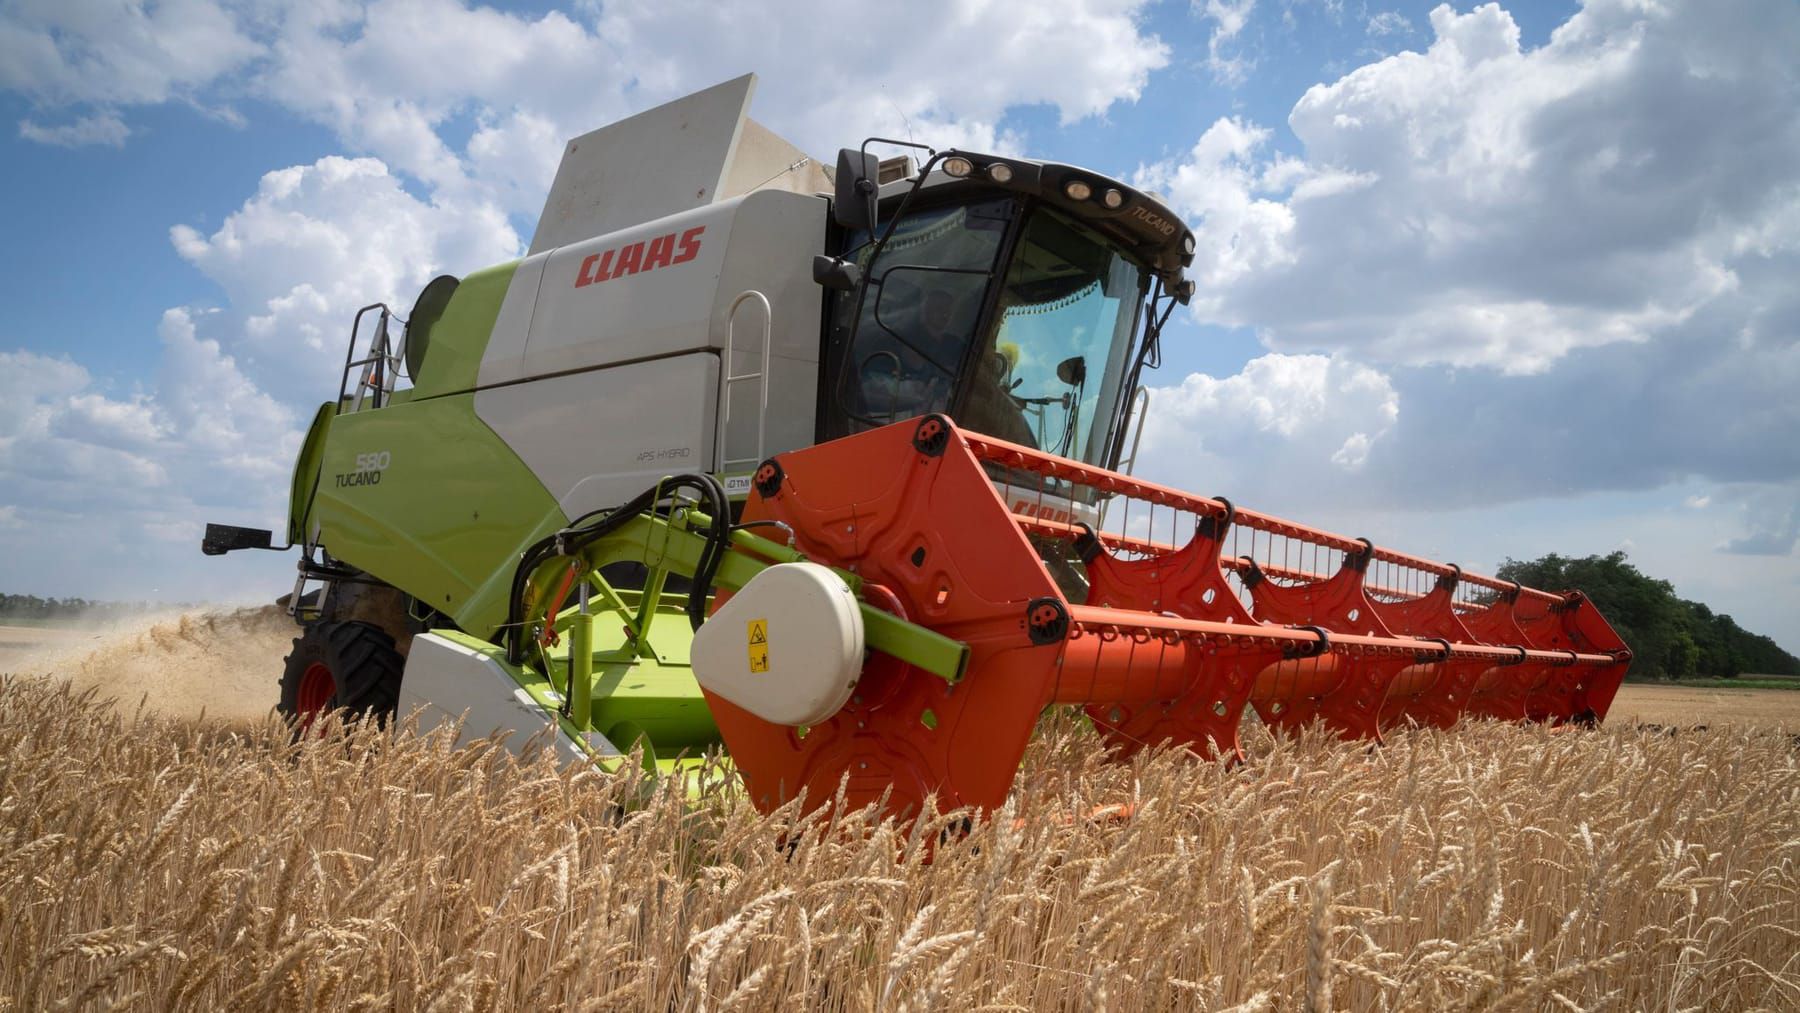 Russland kündigt Getreideabkommen auf: "Das sollte nicht wiederholt werden"